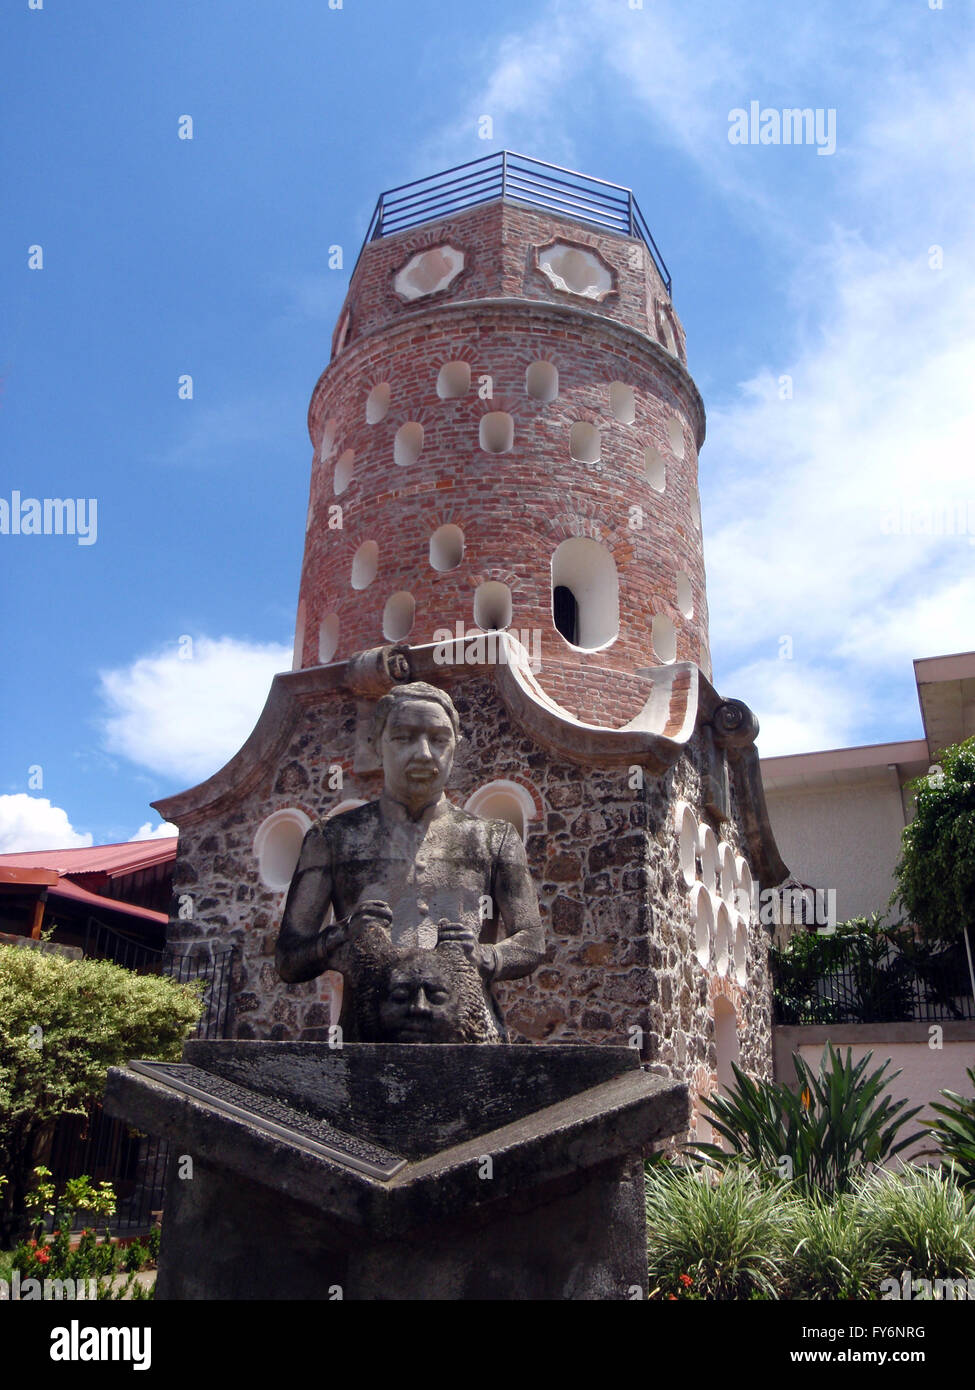 Statue de dame historique en face de El Fortín 1867 tour de garde est la dernière tourelle d'un forteresse espagnole et l'offici Banque D'Images